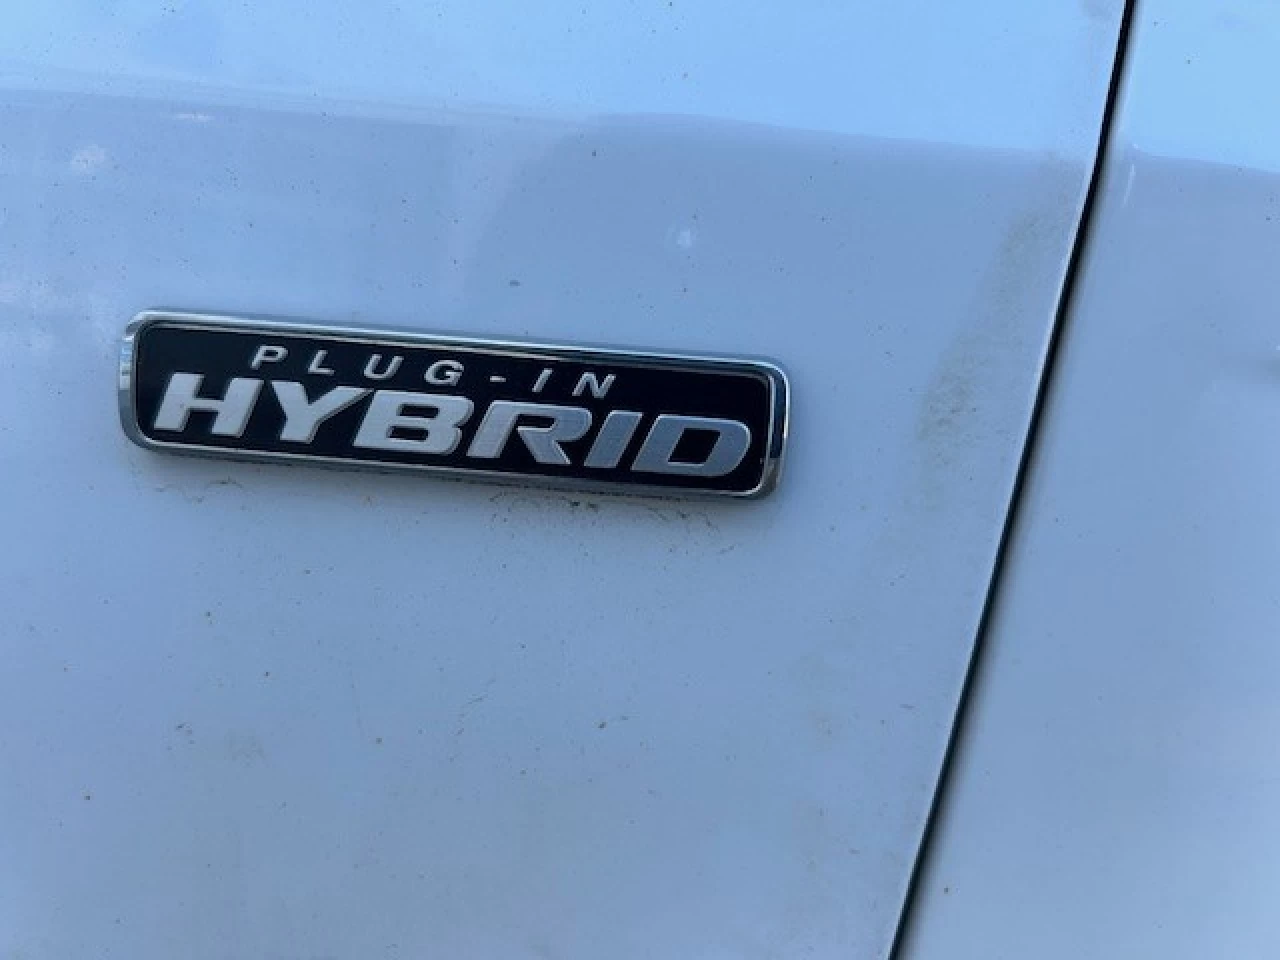 2022 Ford Escape SE Plug-In Hybrid https://www.rejeanlaportelincoln.com/resize/b990ff35b810a3abc0cc817b2ca24889-1